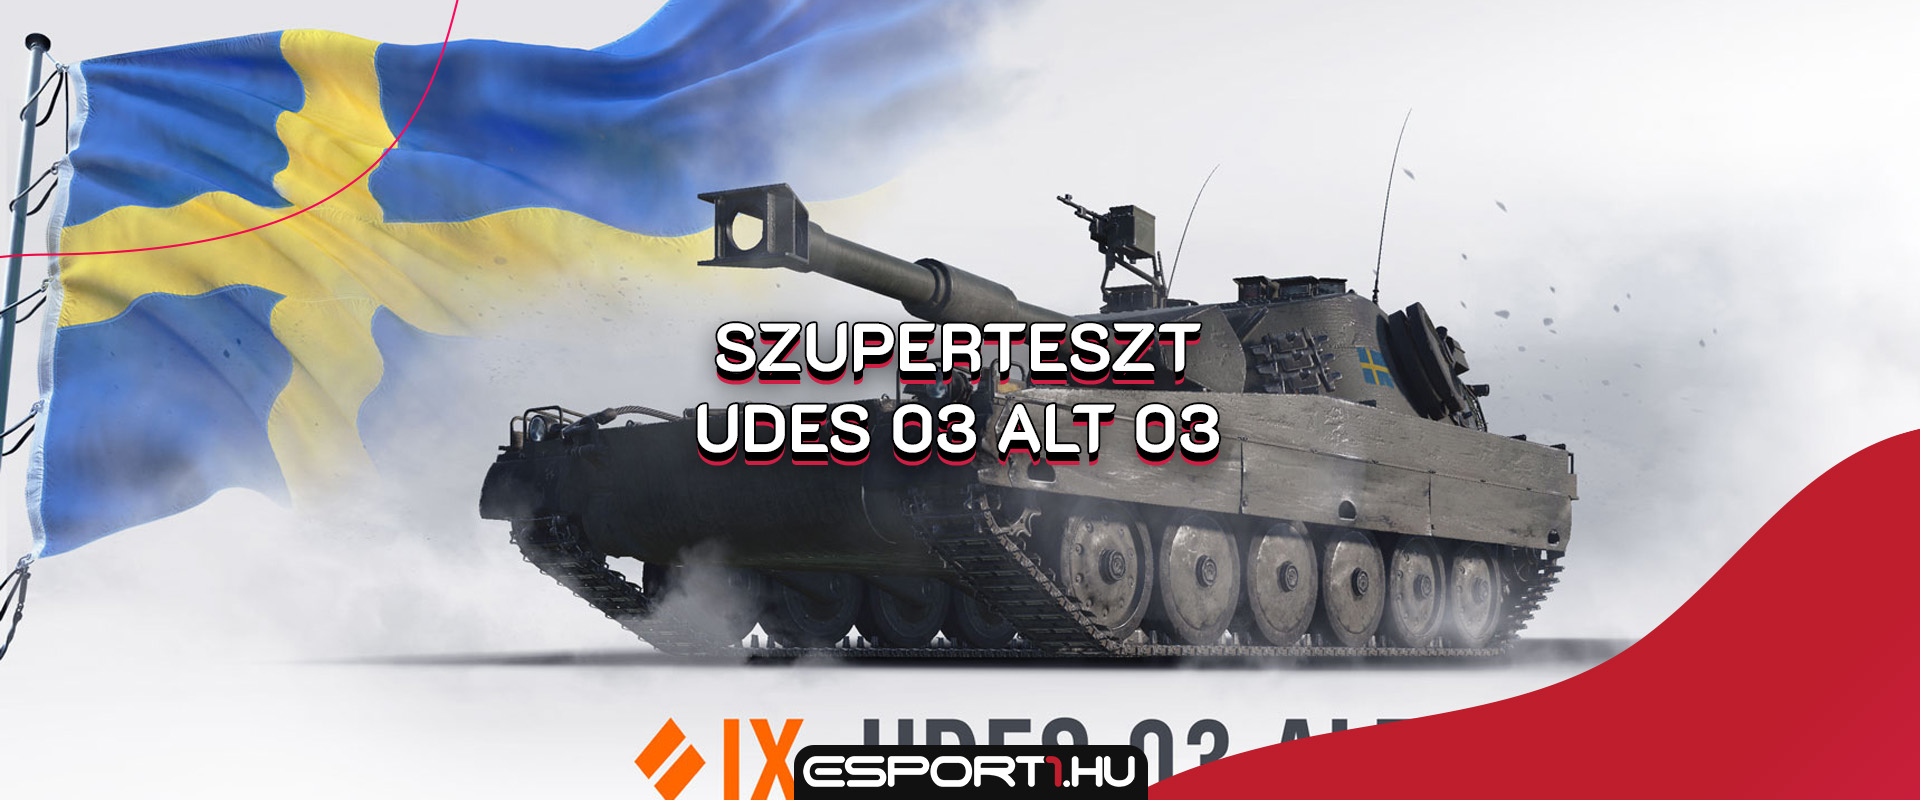 Új tank a szuperteszten - Bemutatjuk az UDES 03 Alt 03 svéd harckocsit!